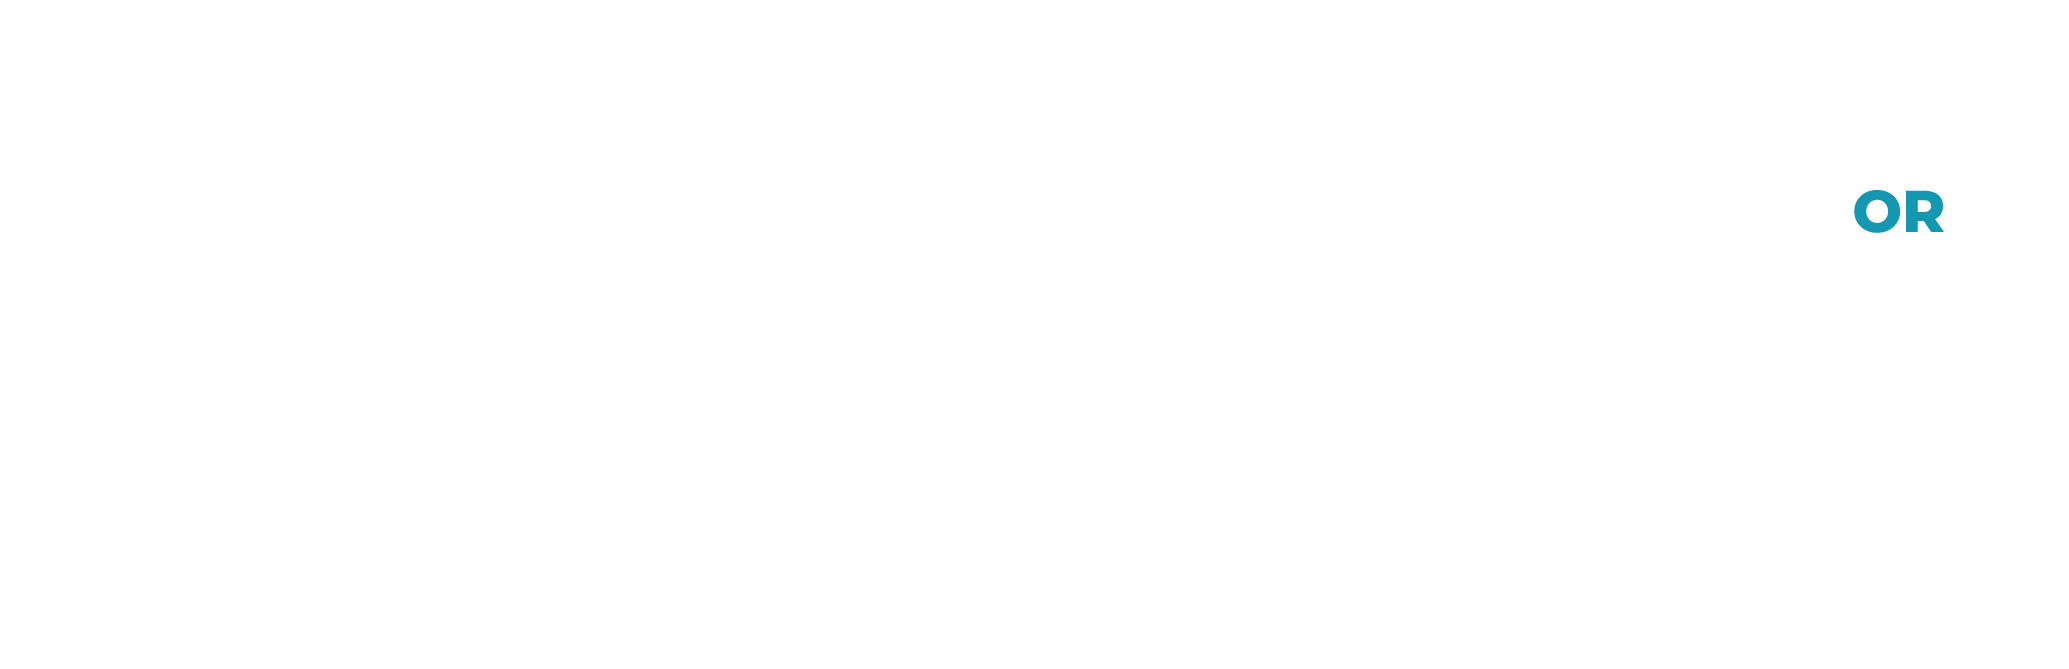 Visit Bend logo